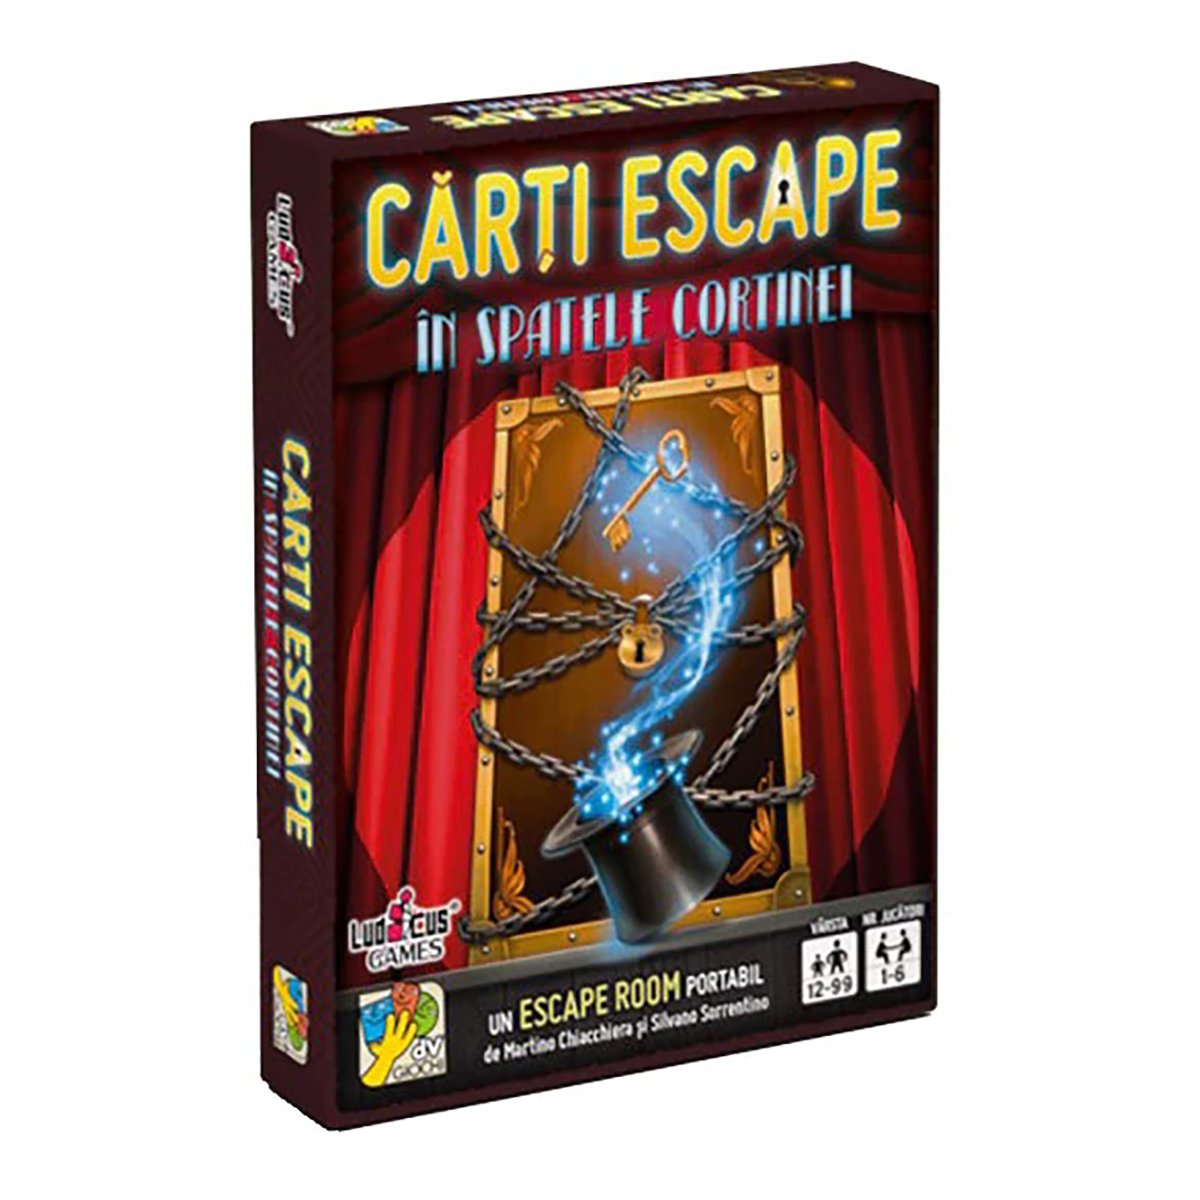 Joc de societate dv Giochi, Carti Escape Ed. II, In spatele cortinei dv Giochi